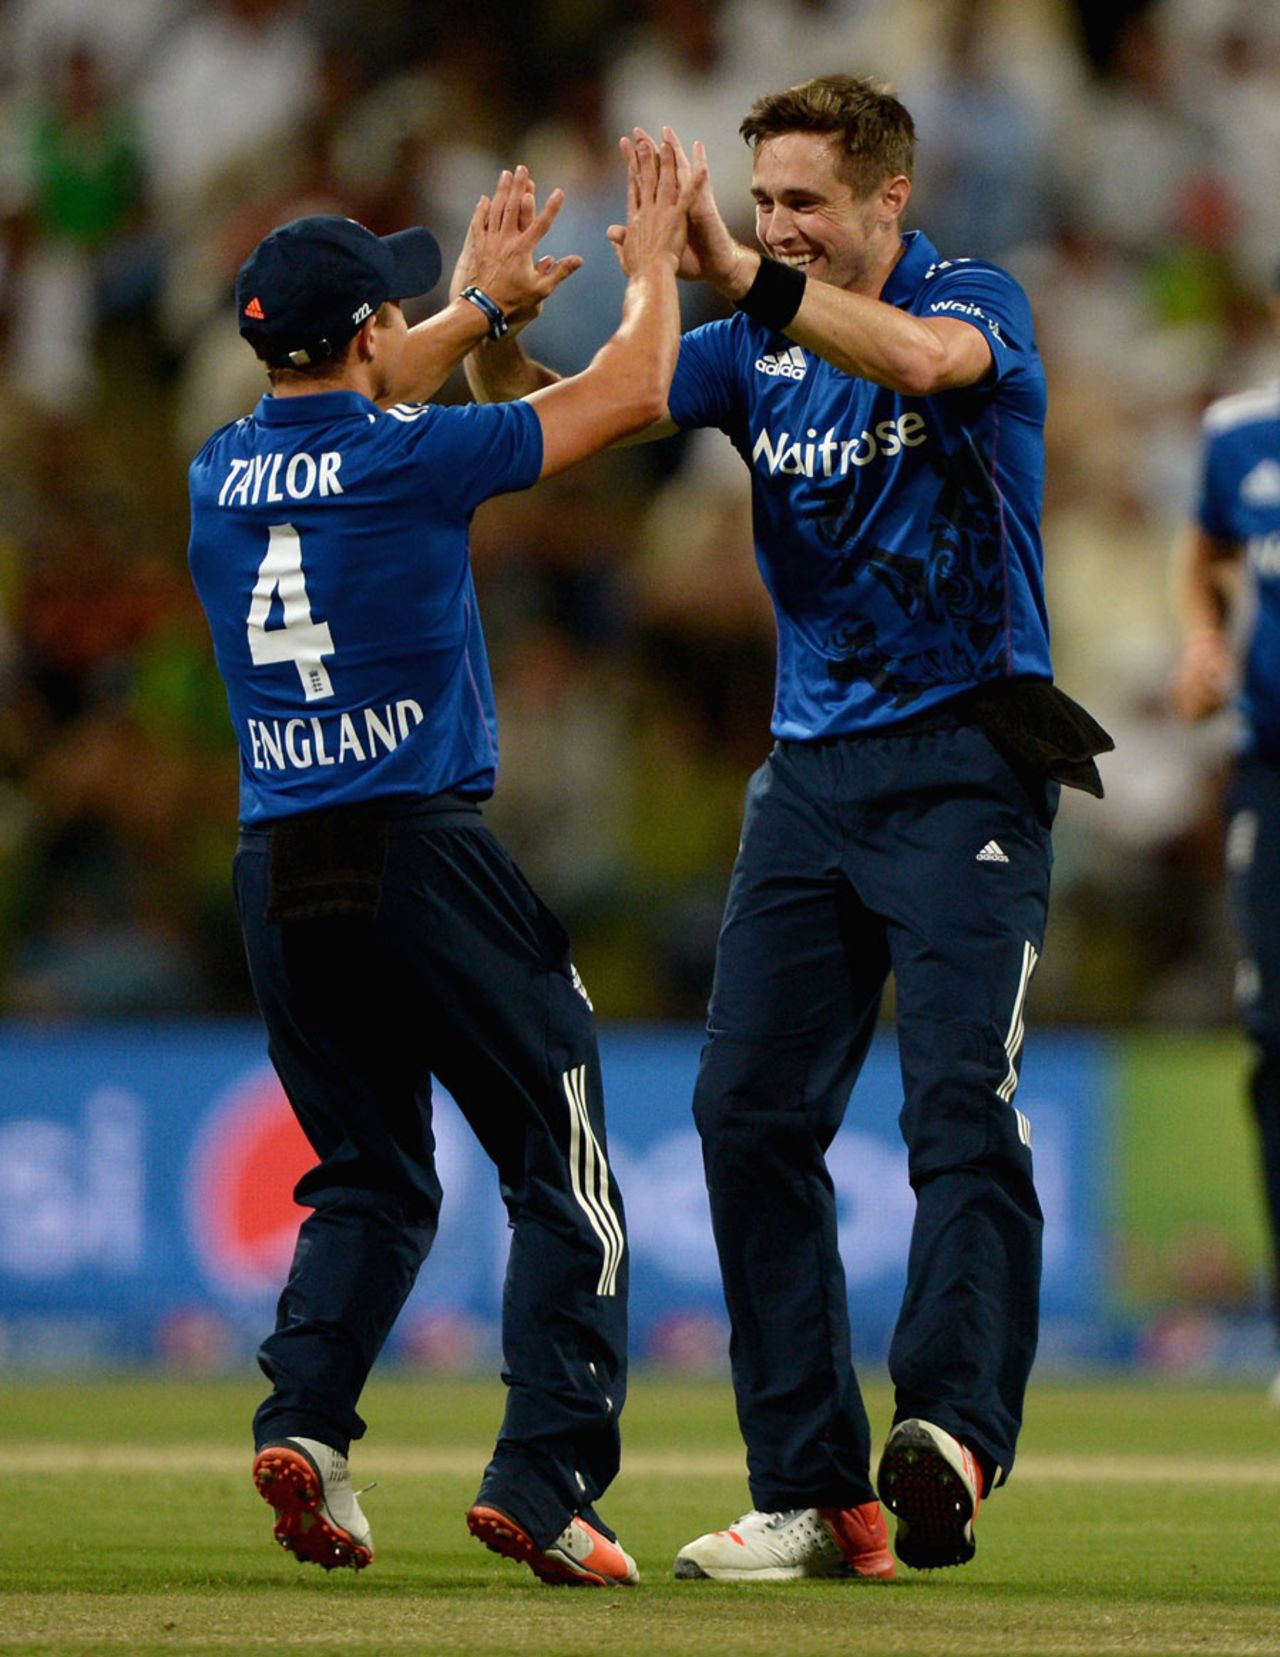 Chris Woakes and James Taylor combined to dismiss Shoaib Malik, Pakistan v England, 2nd ODI, Abu Dhabi, November 13, 2015